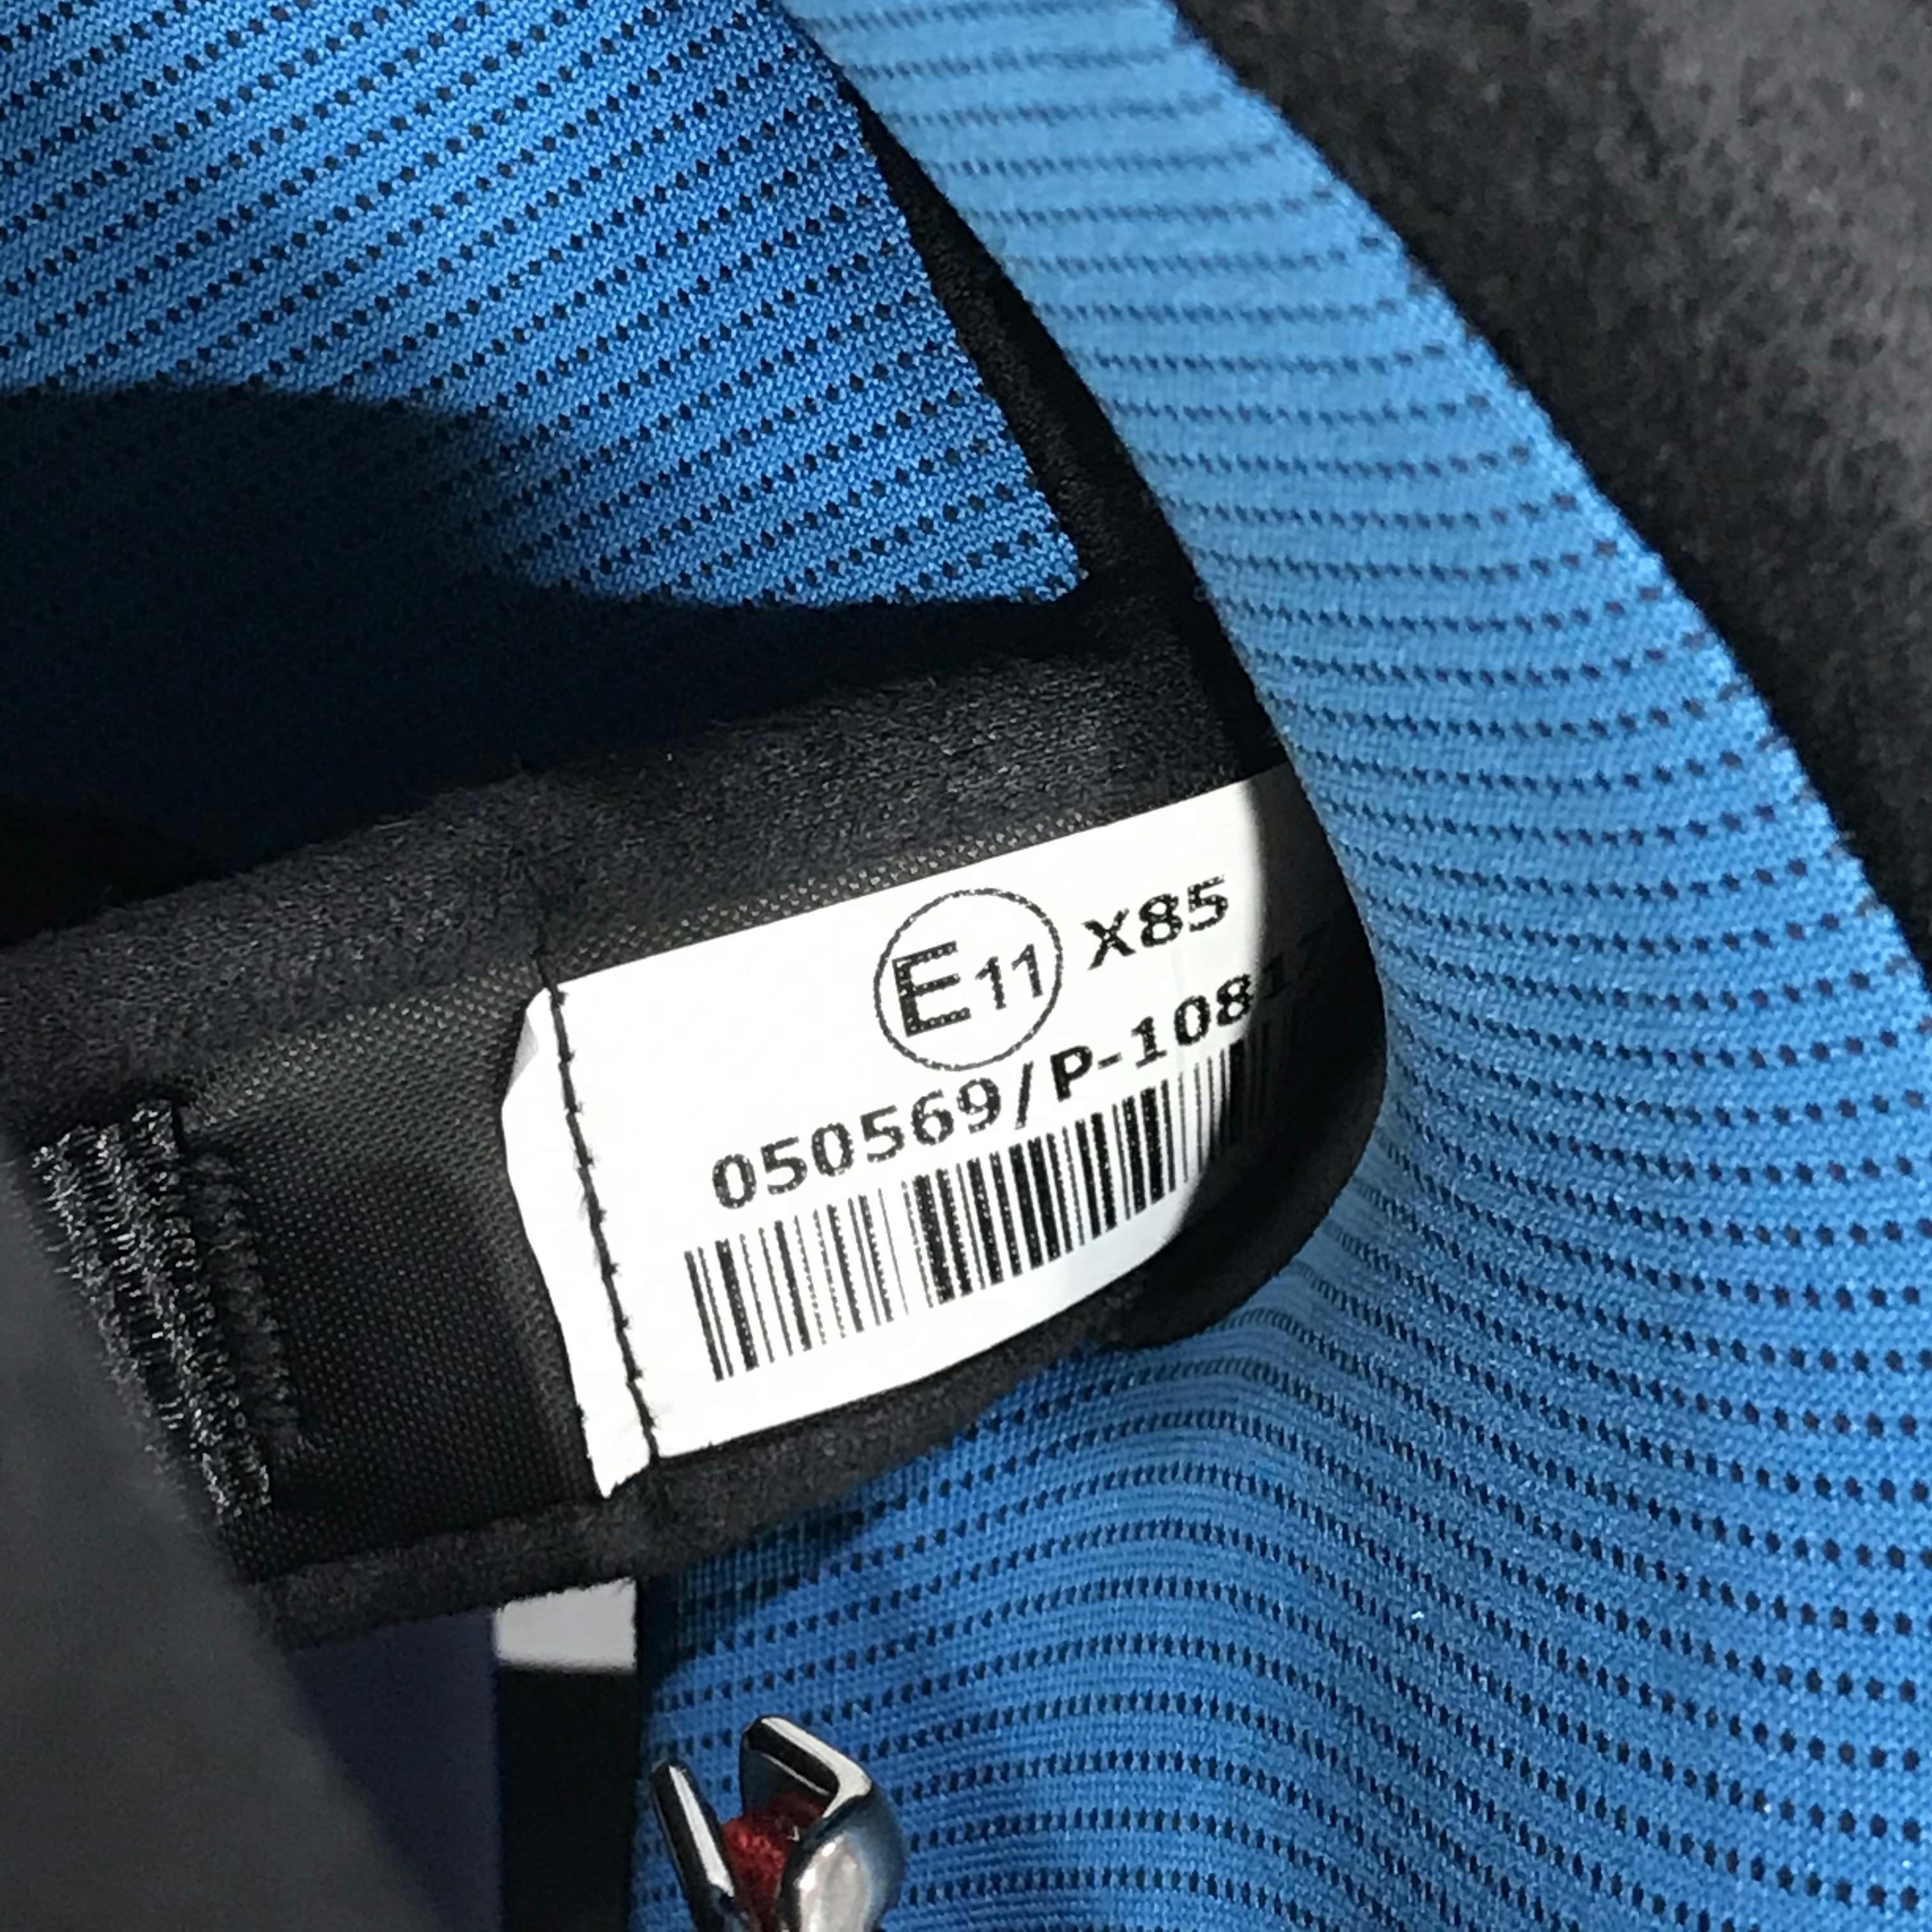 European standard tag inside a motorcycle helmet